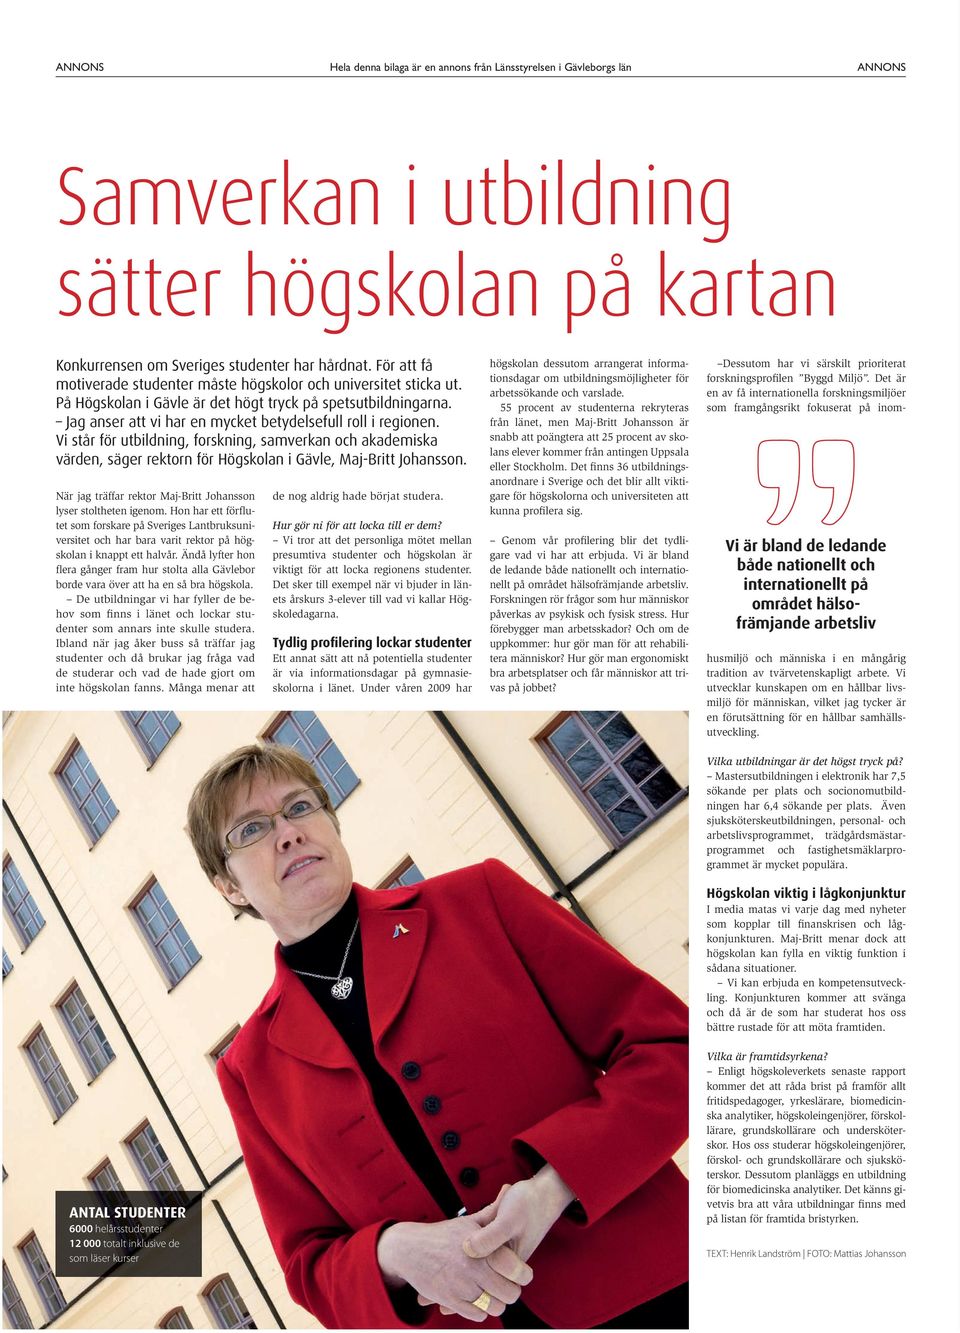 Vi står för utbildning, forskning, samverkan och akademiska värden, säger rektorn för Högskolan i Gävle, Maj-Britt Johansson. När jag träffar rektor Maj-Britt Johansson lyser stoltheten igenom.